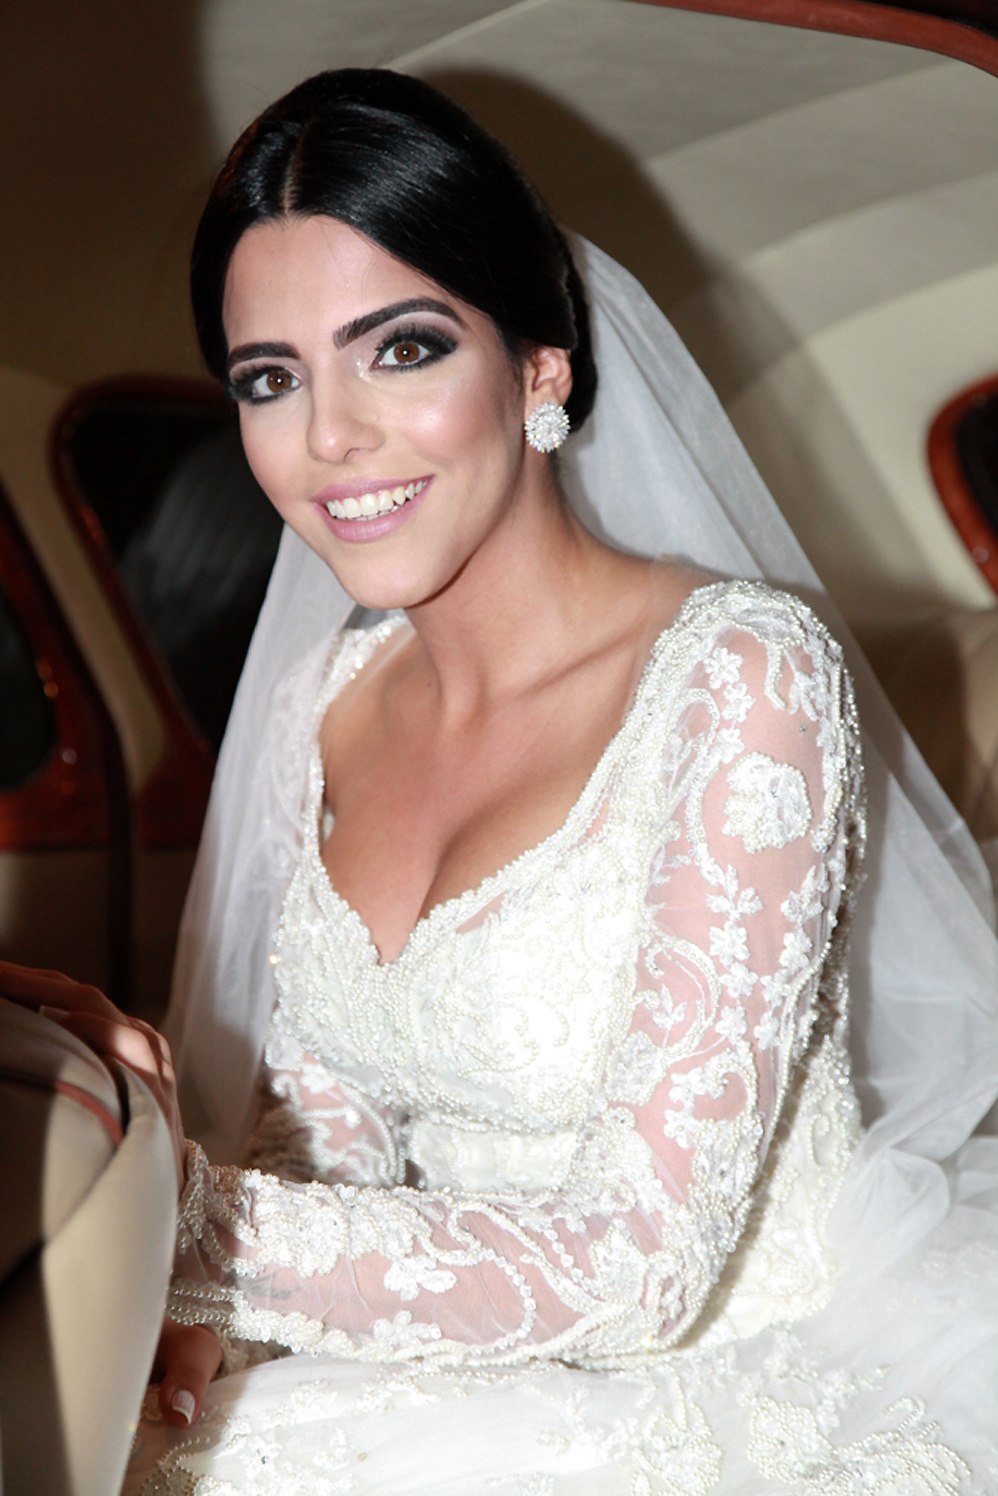 Ainda dentro do carro, a noiva Larissa Saad posou para algumas fotos